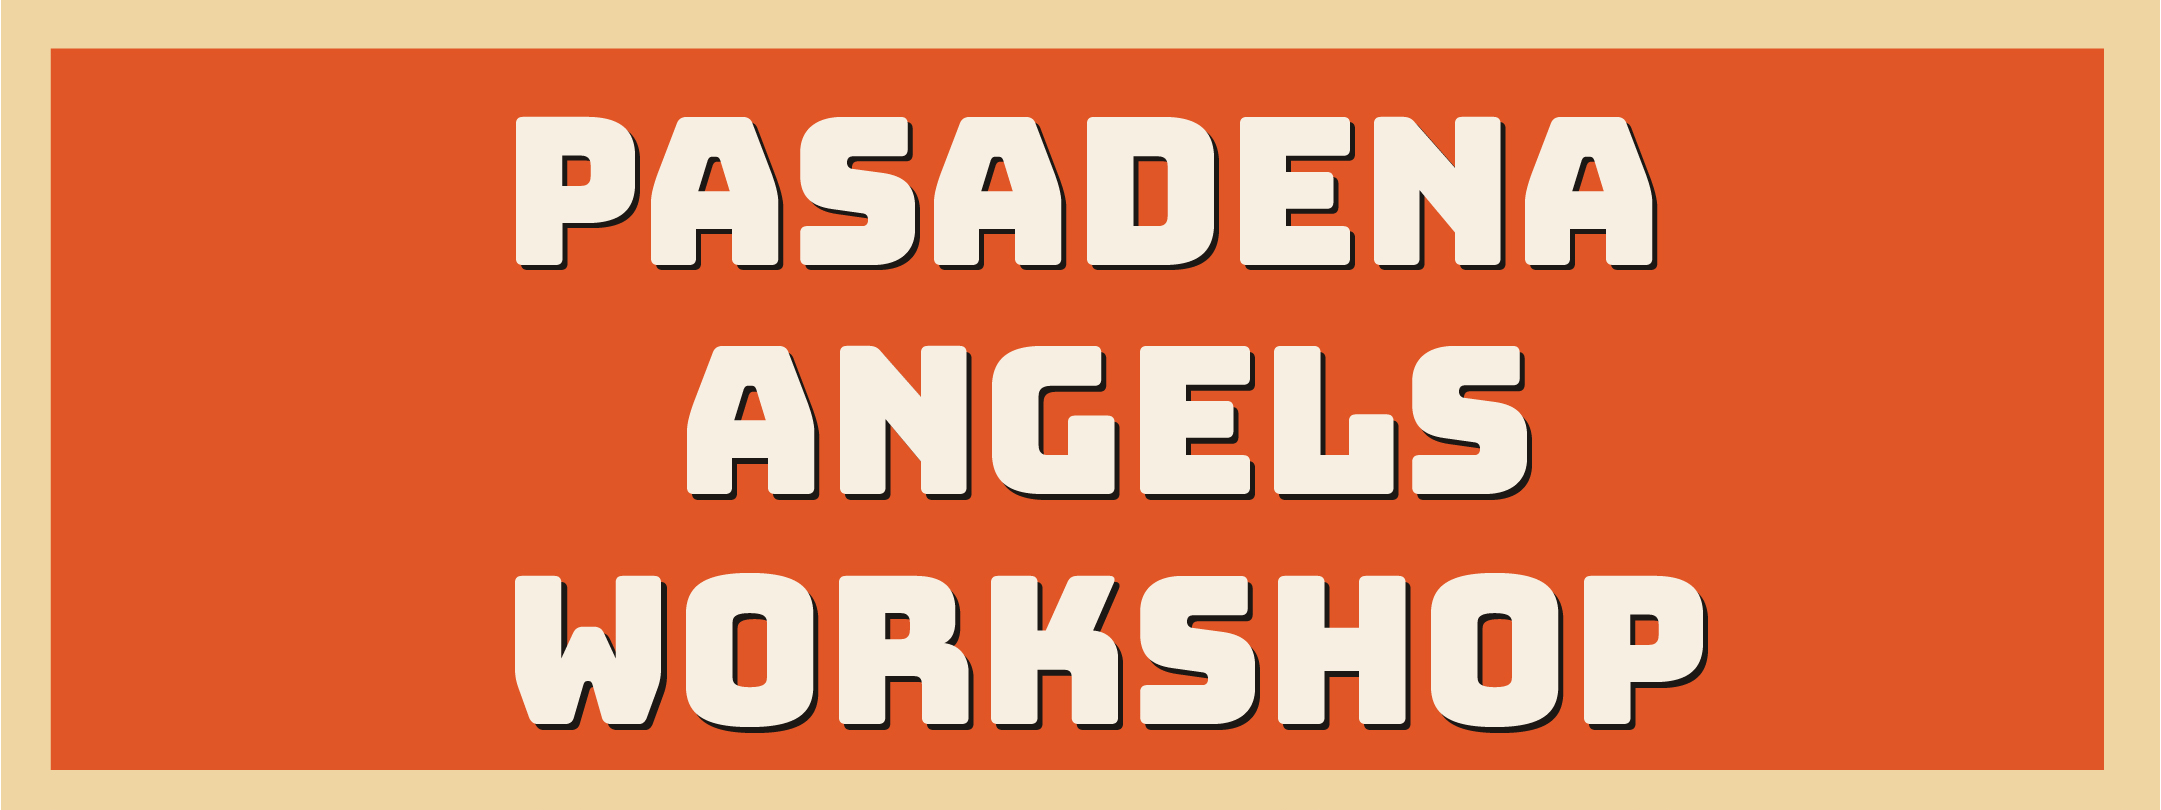 pasadena-angels-workshop-logo